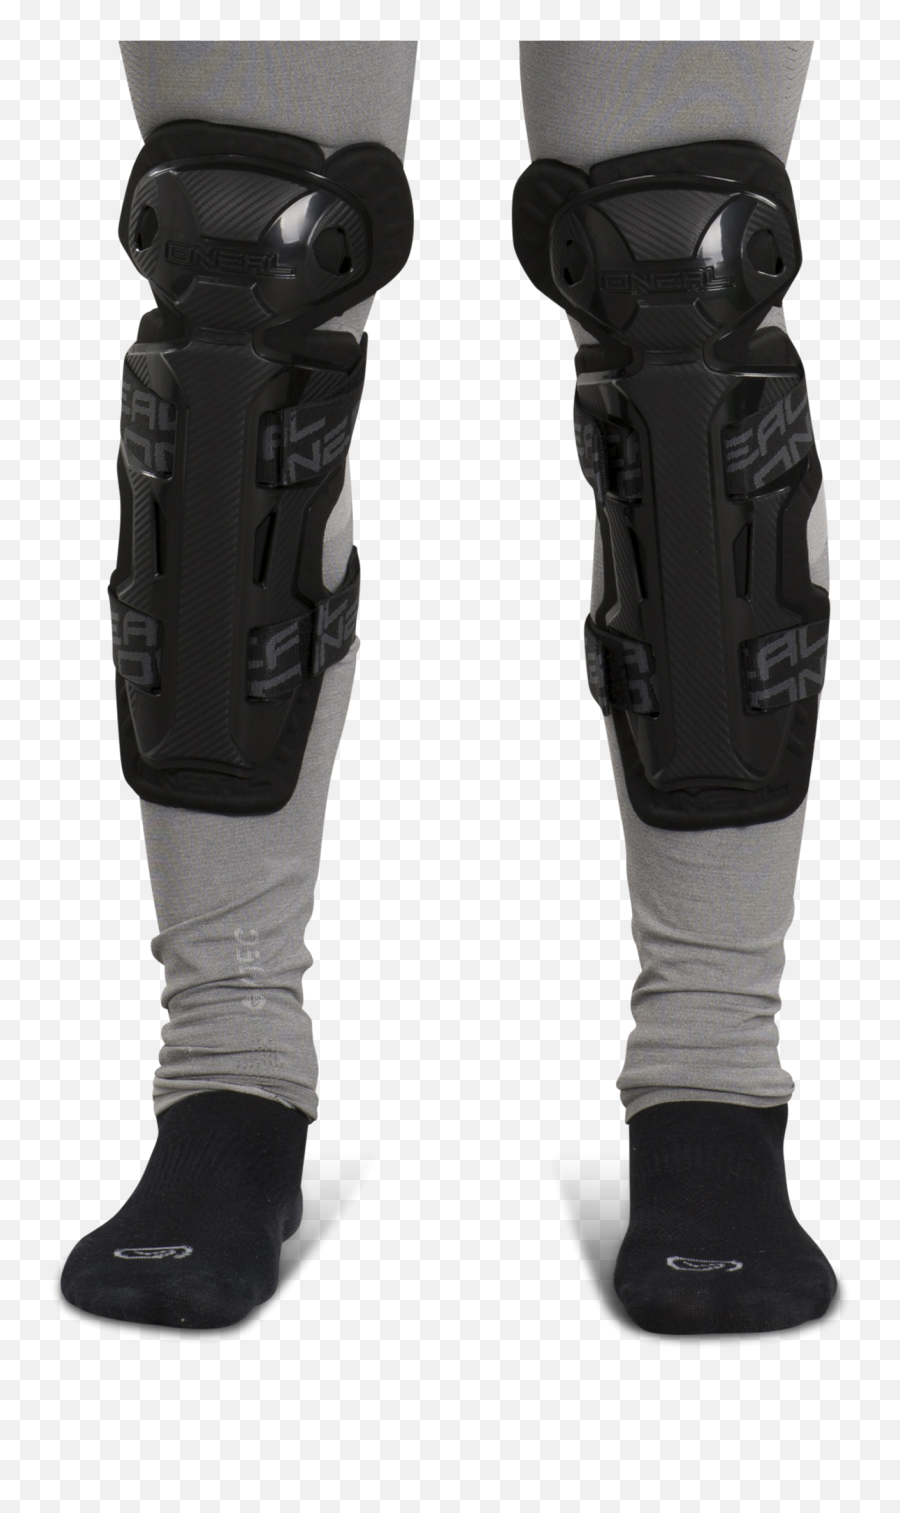 Ou0027neal Pro Ii Rl Carbon Look Knee Guards - Get 10 Off Today Knee Pad Emoji,Knee Pad Emoji